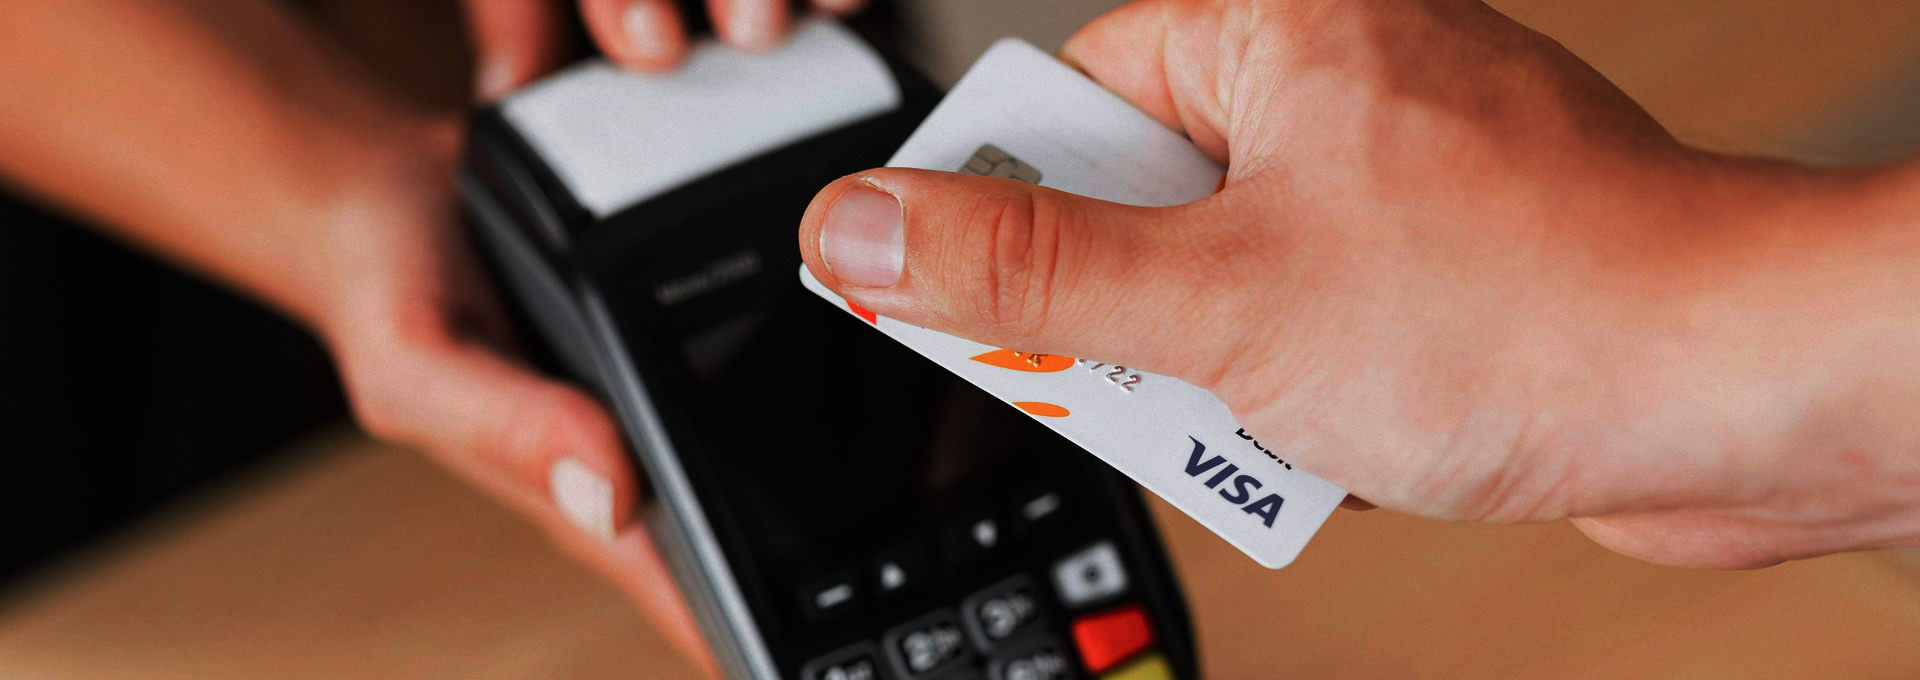 Pagamento com VISA, Mastercard e Multibanco